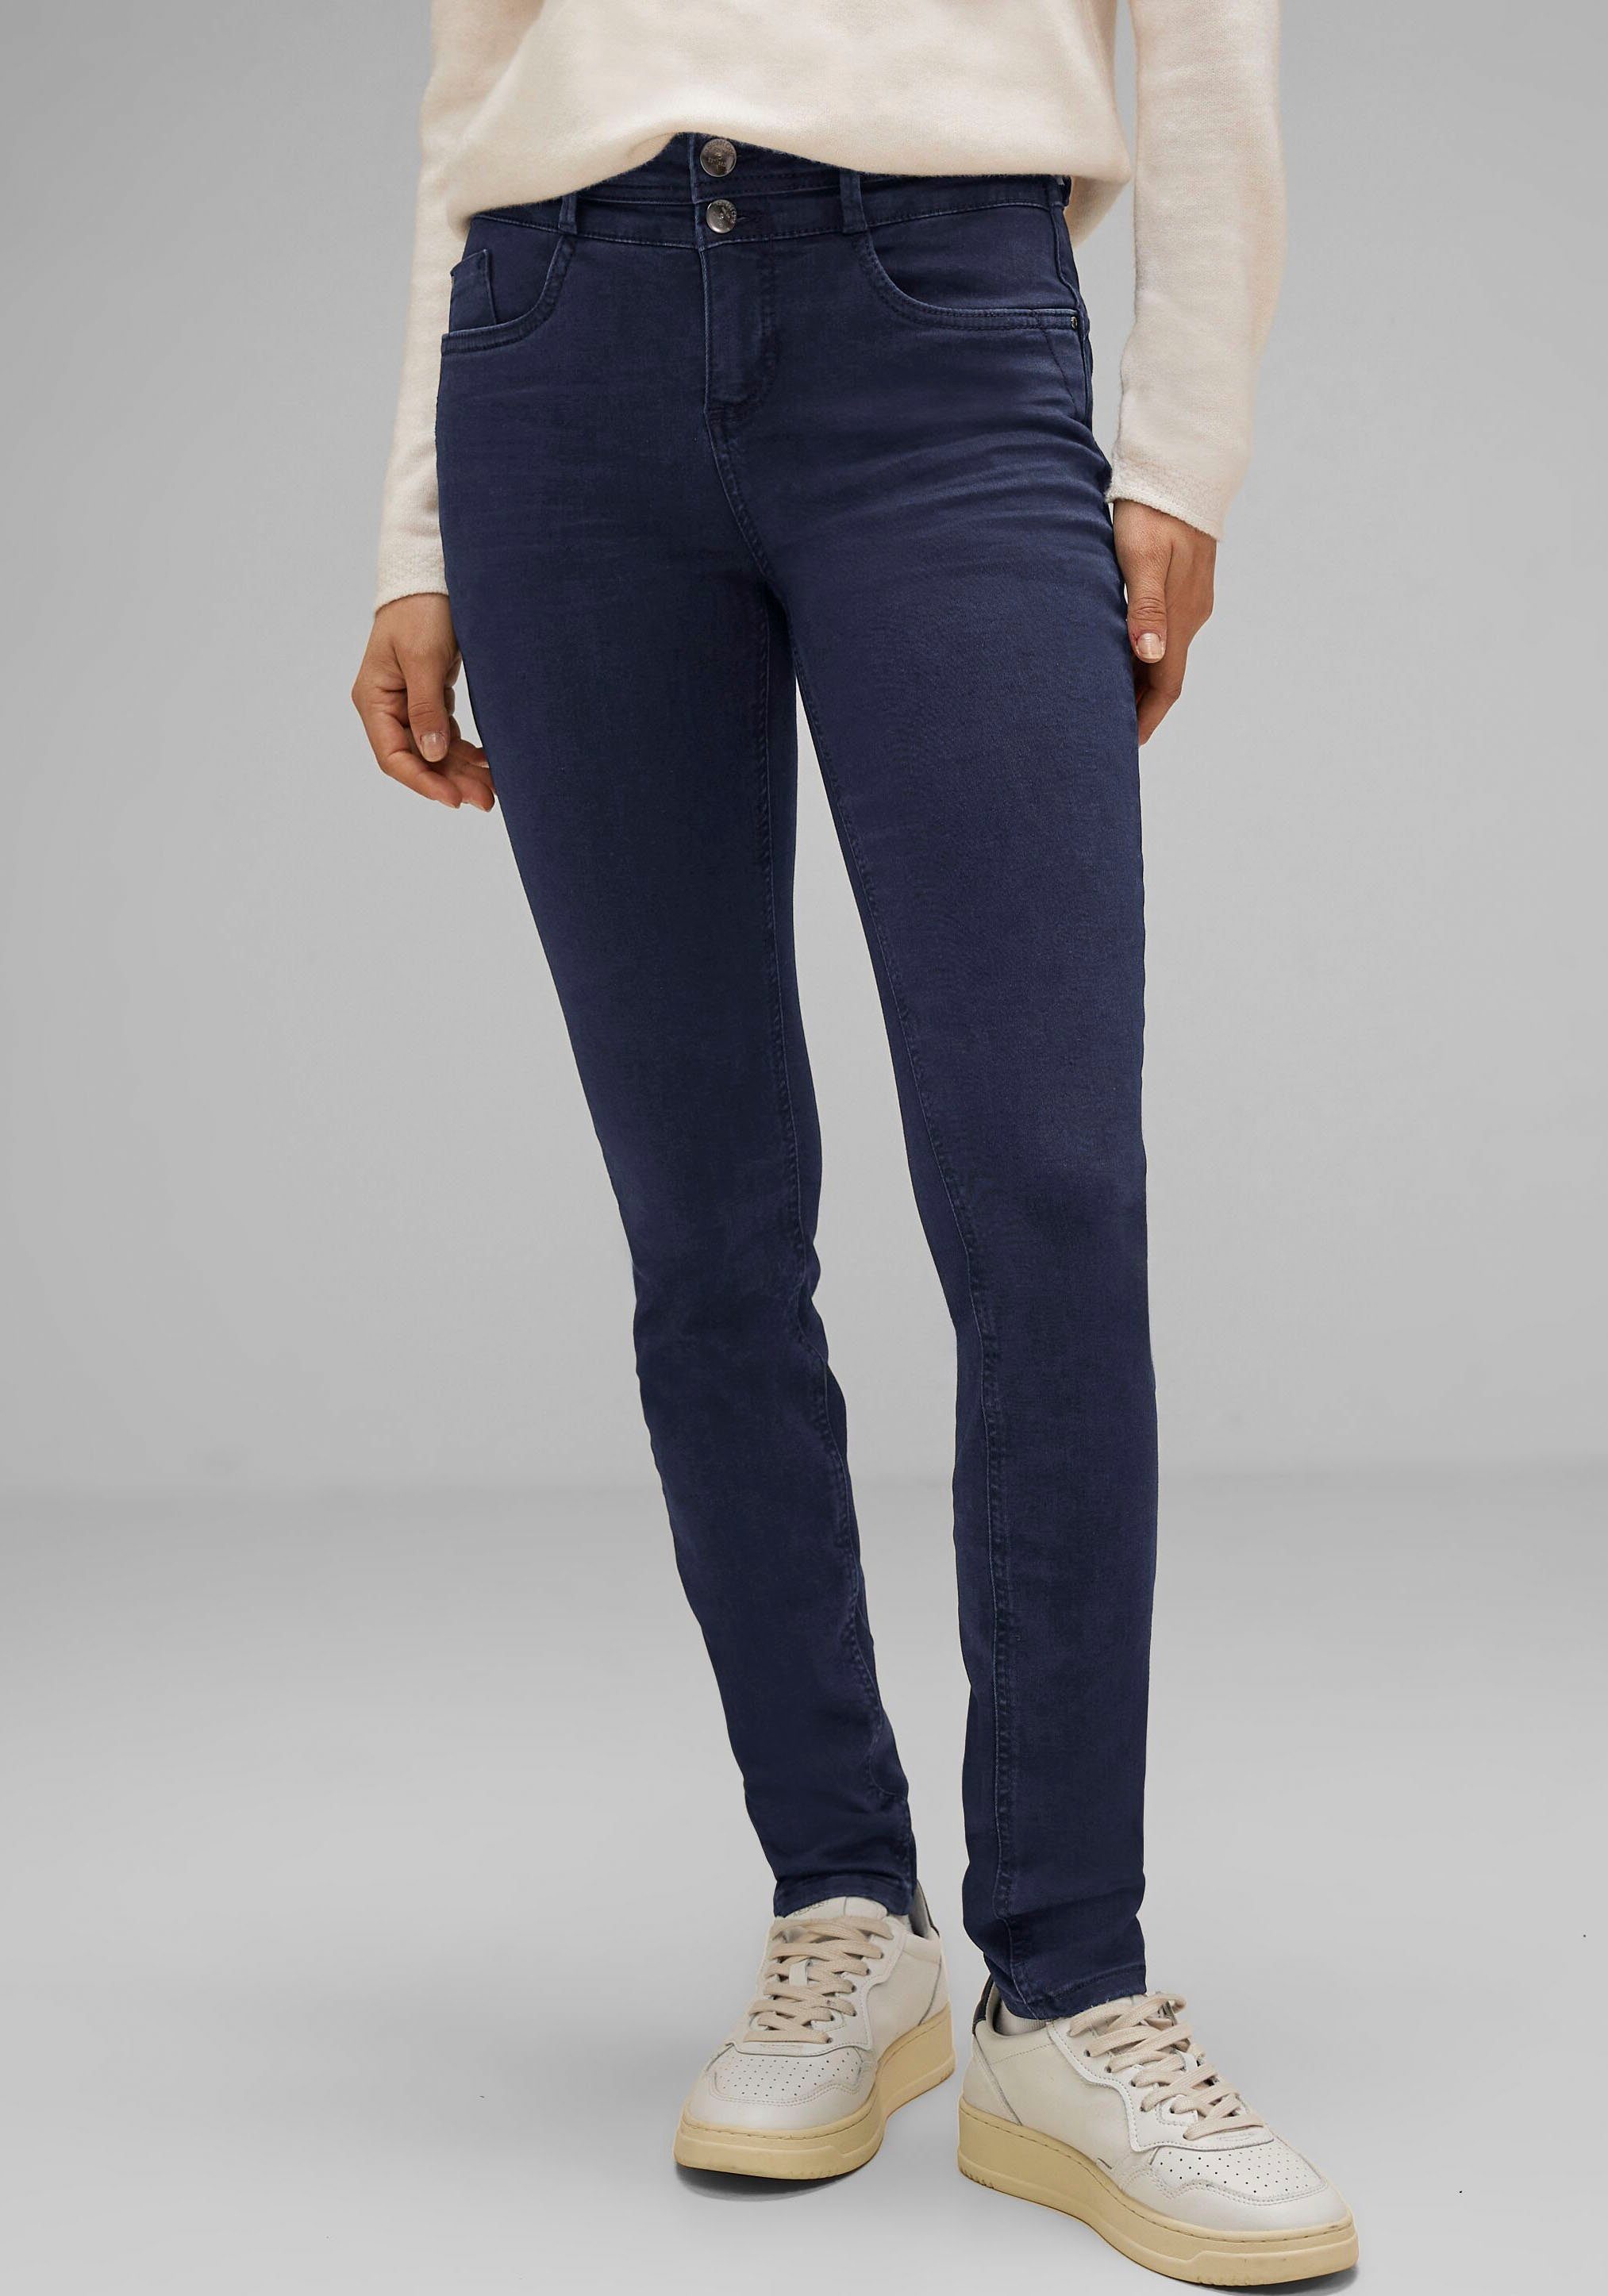 STREET ONE Slim-fit-Jeans im Style York, Slim fit mit schmalen Beinen und  hoher Leibhöhe